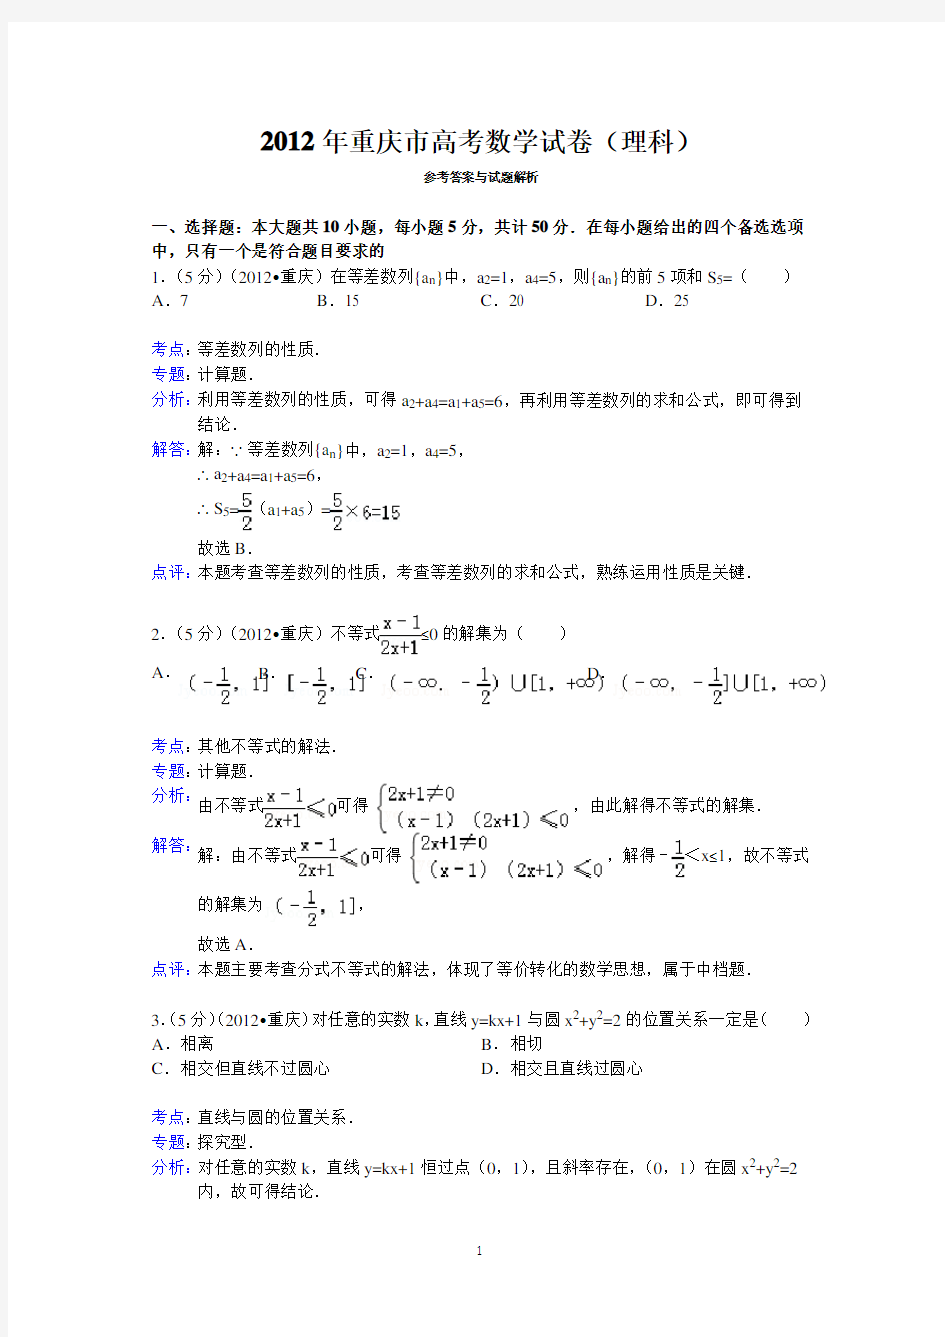 (完整版)2012年重庆市高考数学试卷(理科)答案与解析